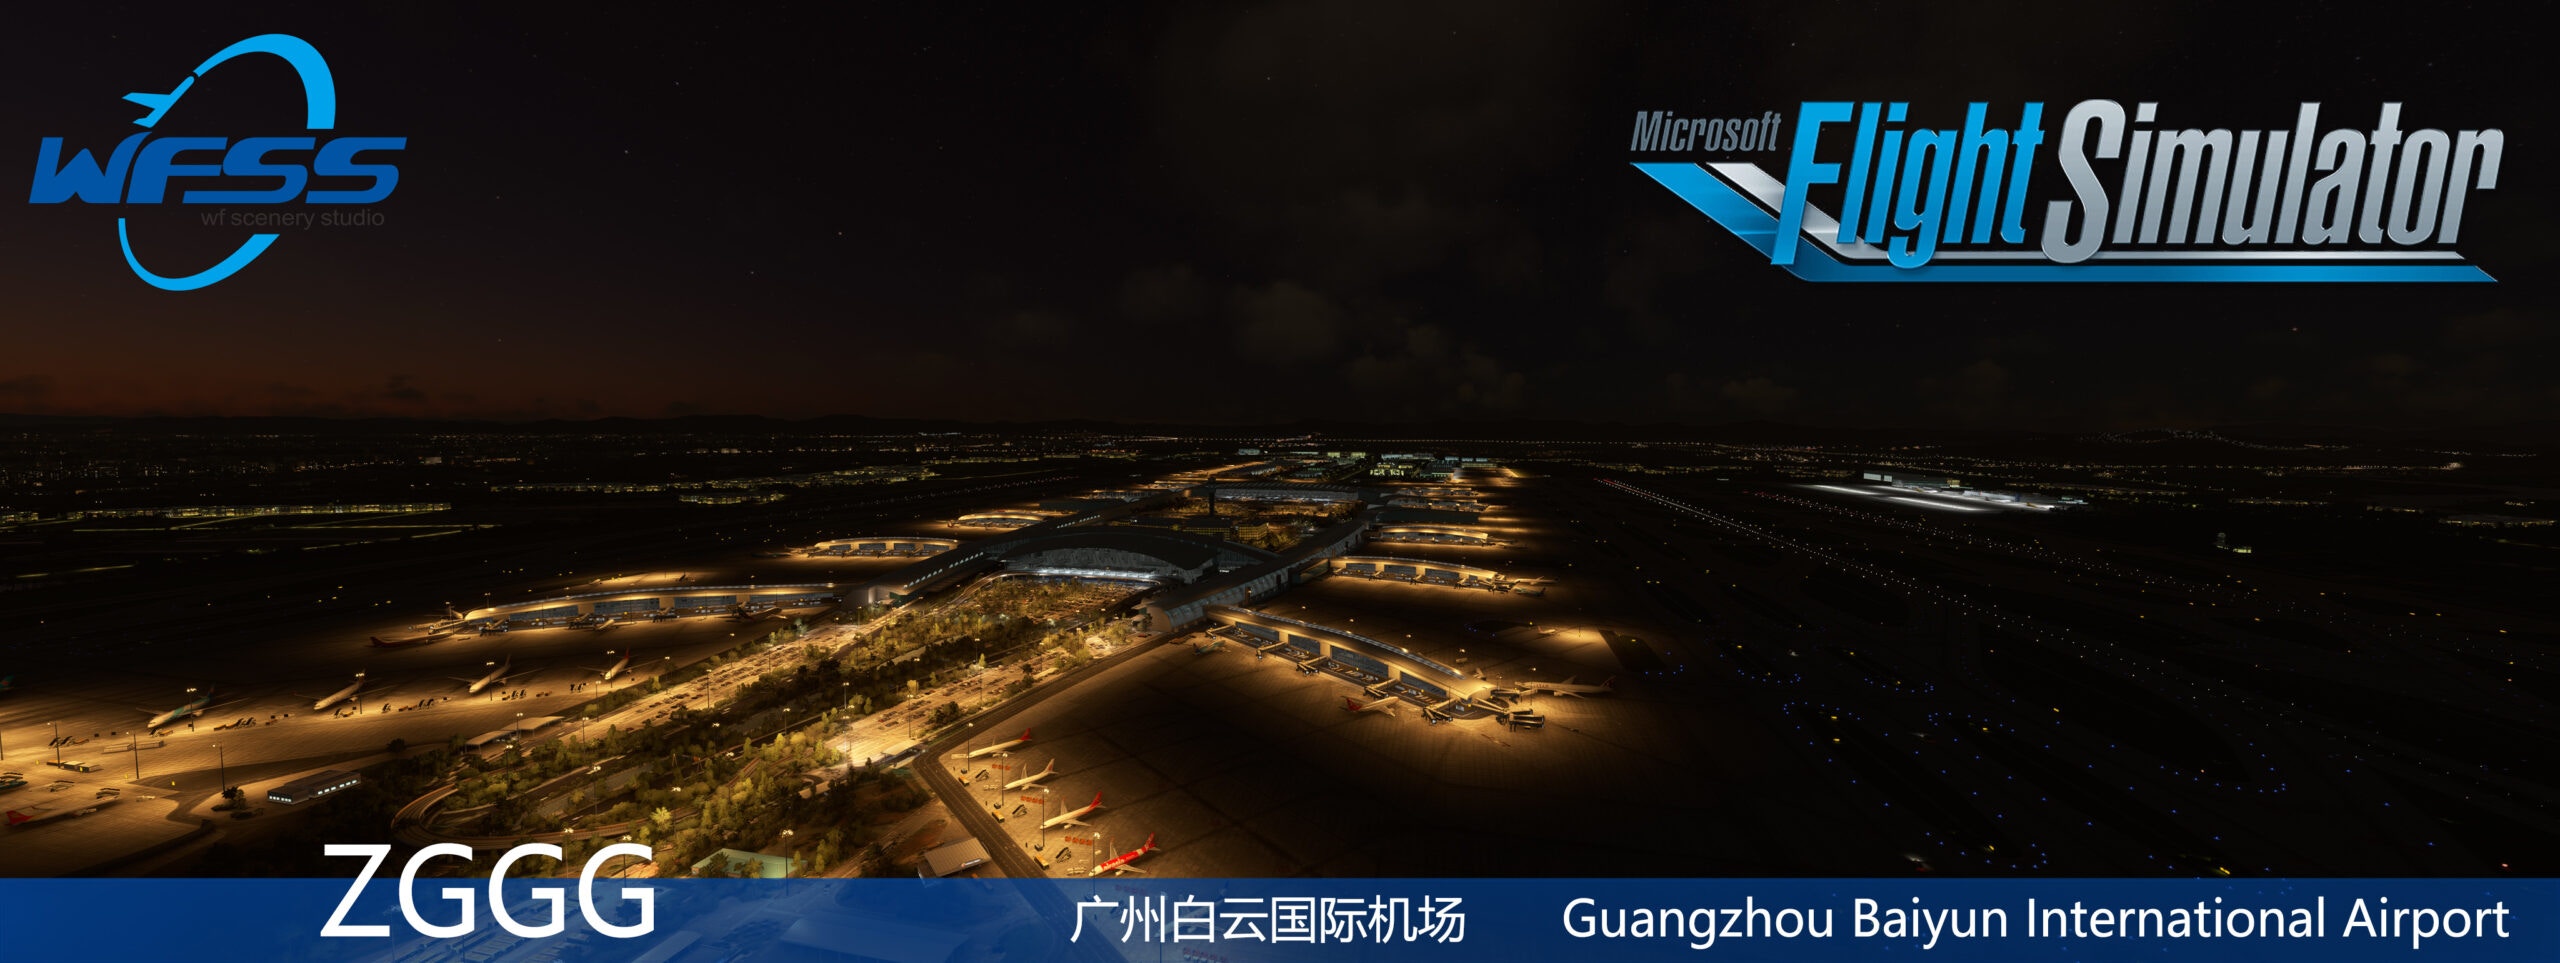 WF Scenery Studio Releases Guangzhou Baiyun for MSFS